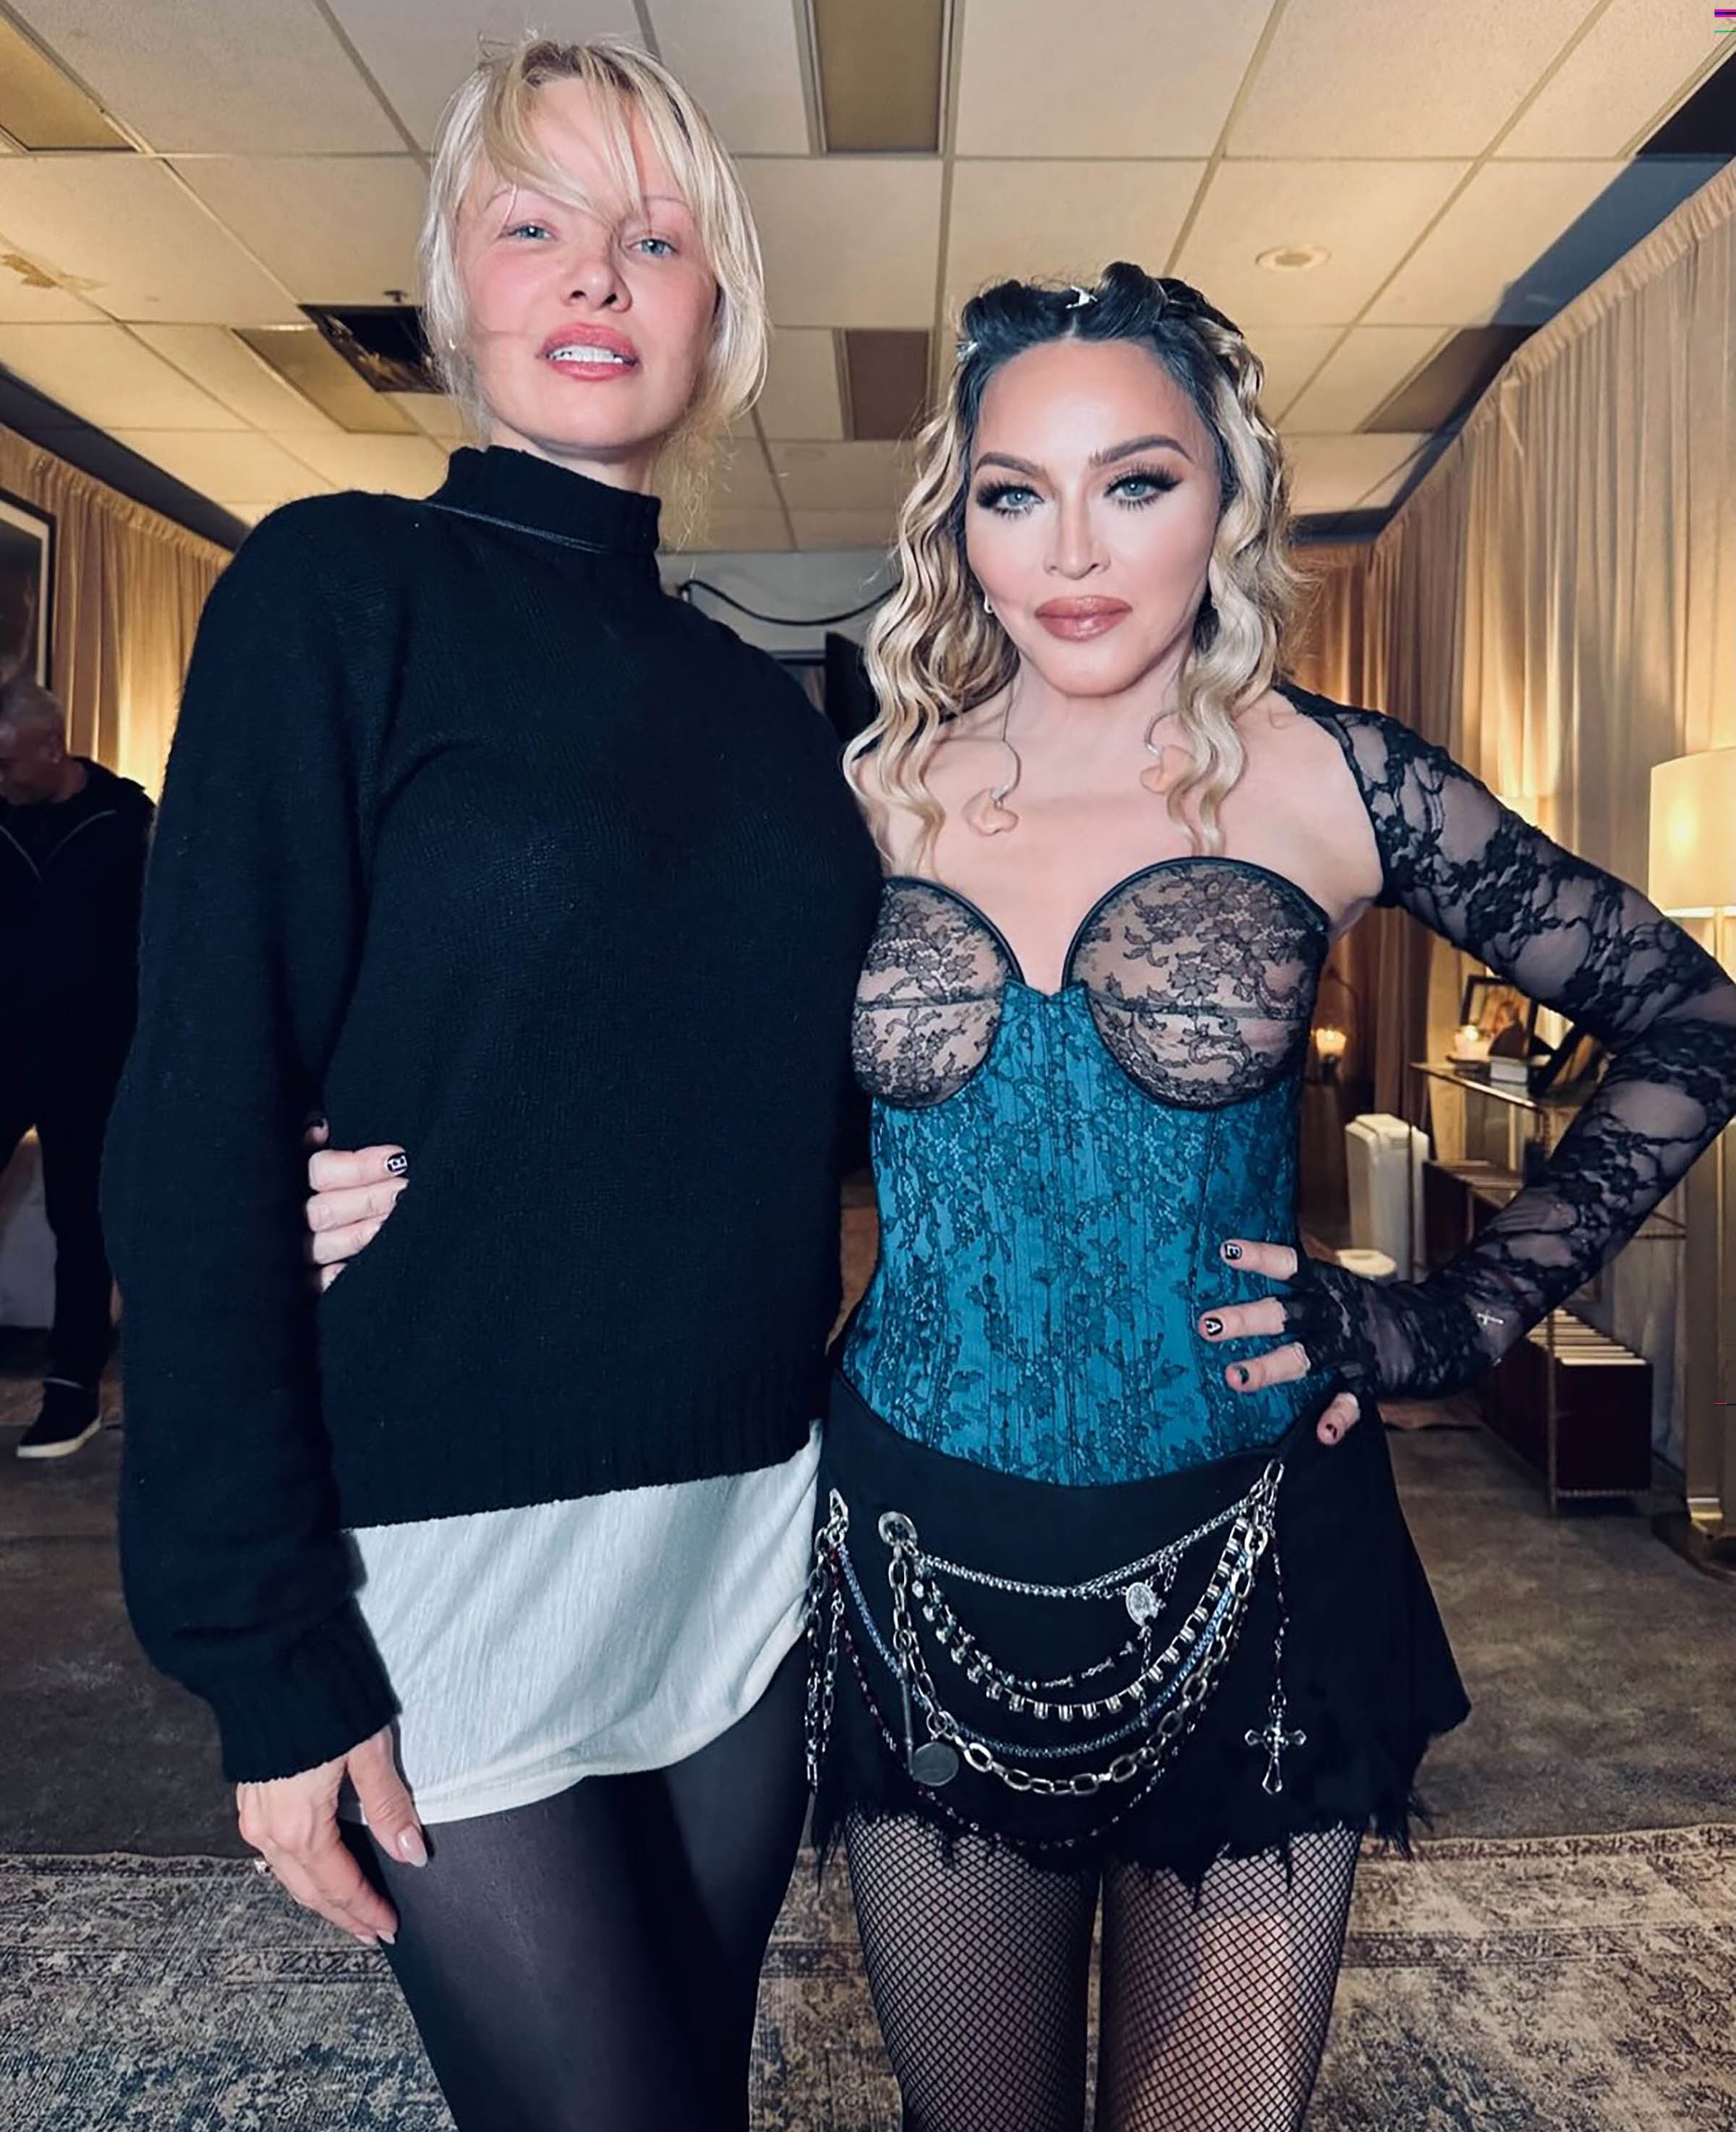 Pam y Madonna fueron fotografiadas detrás del escenario después de formar parejas para juzgar a los bailarines que interpretaban el éxito de 1990 en un concierto.